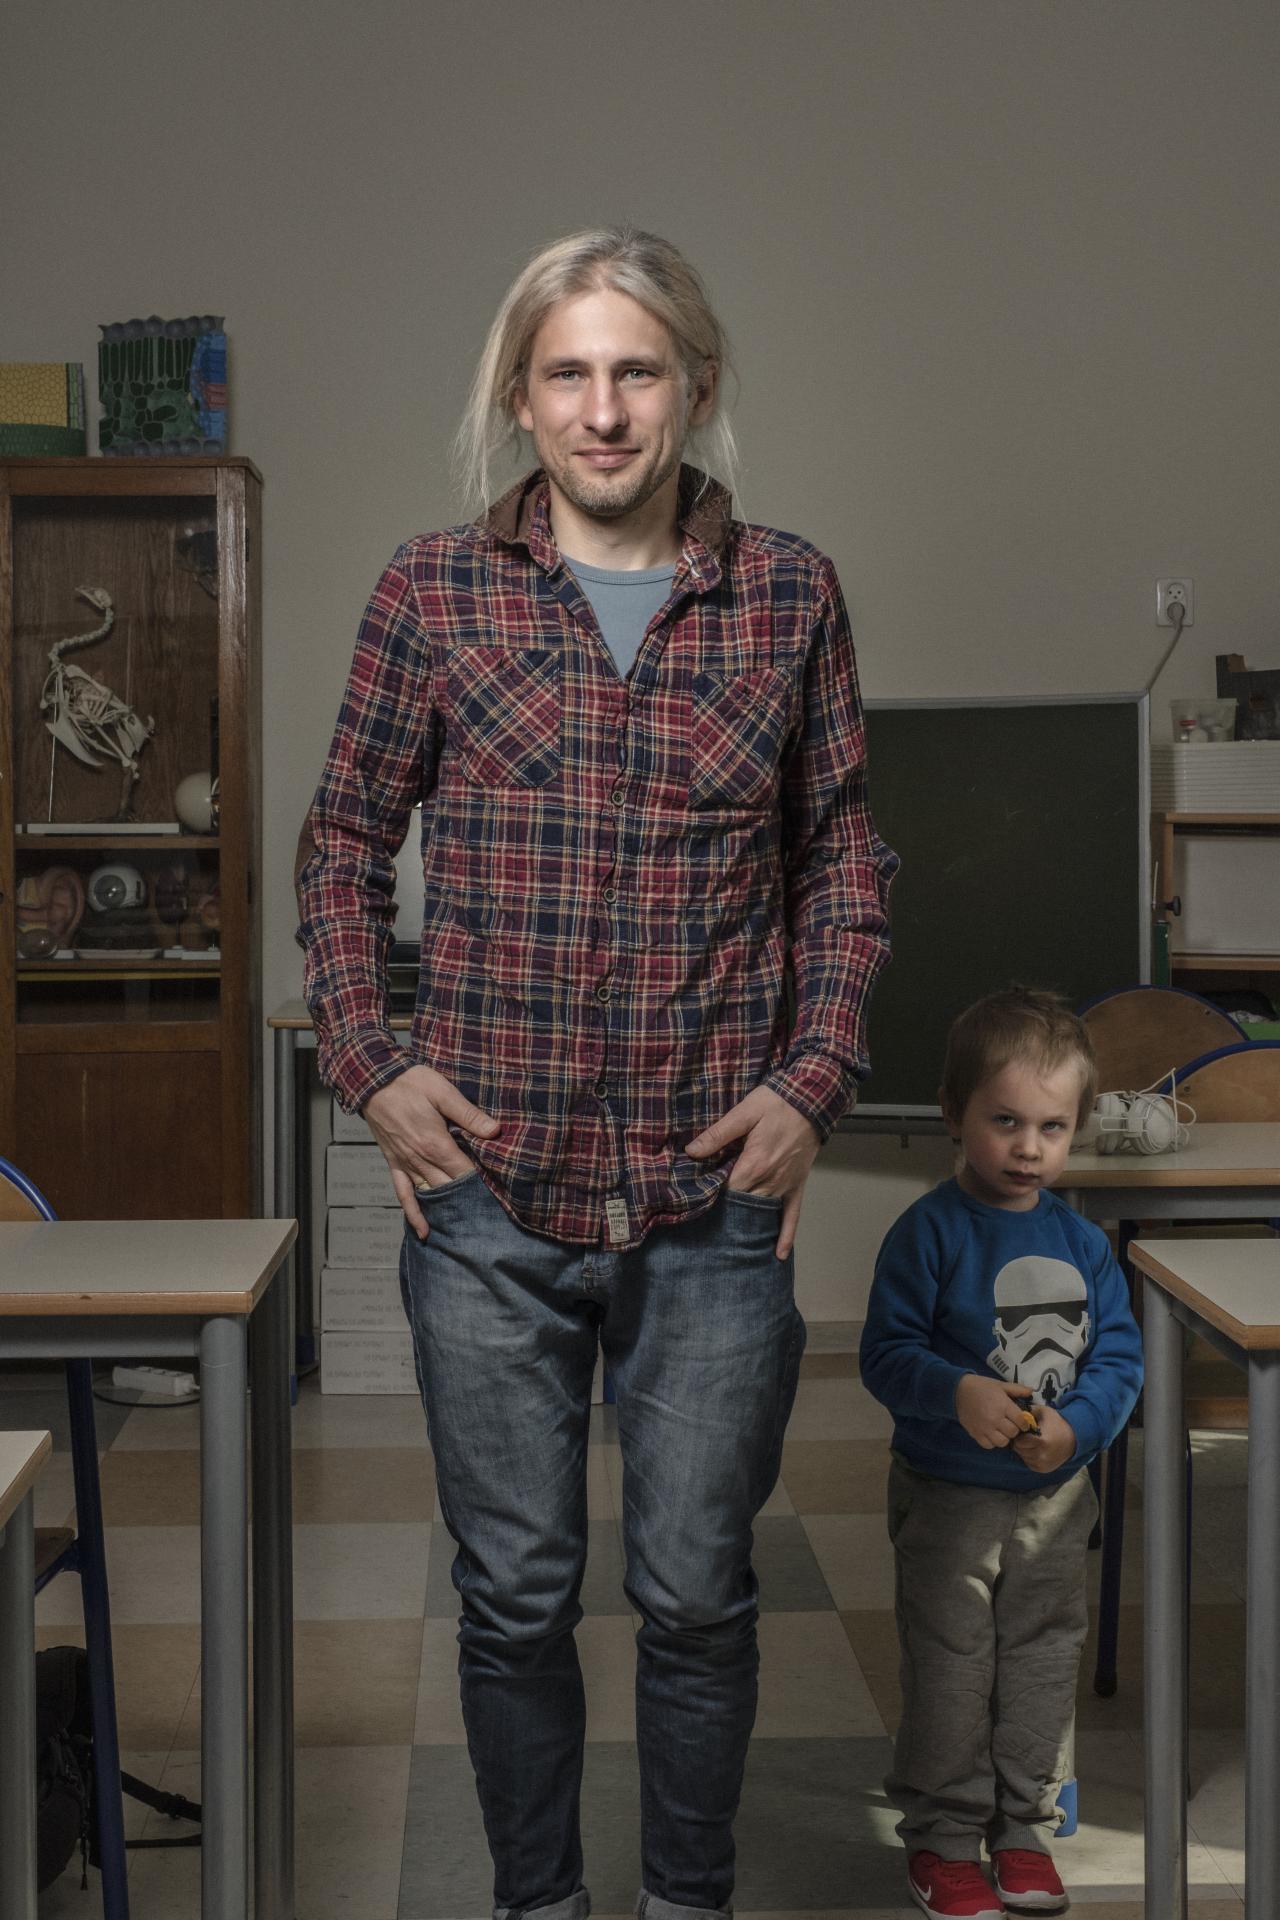 Učiteľ Dominik Marszał študoval špeciálne na to, aby mohol vyučovať predmet Príroda deti od 4. do 6. ročníka. Tento blokový predmet však po reforme v roku 2017 zanikol.